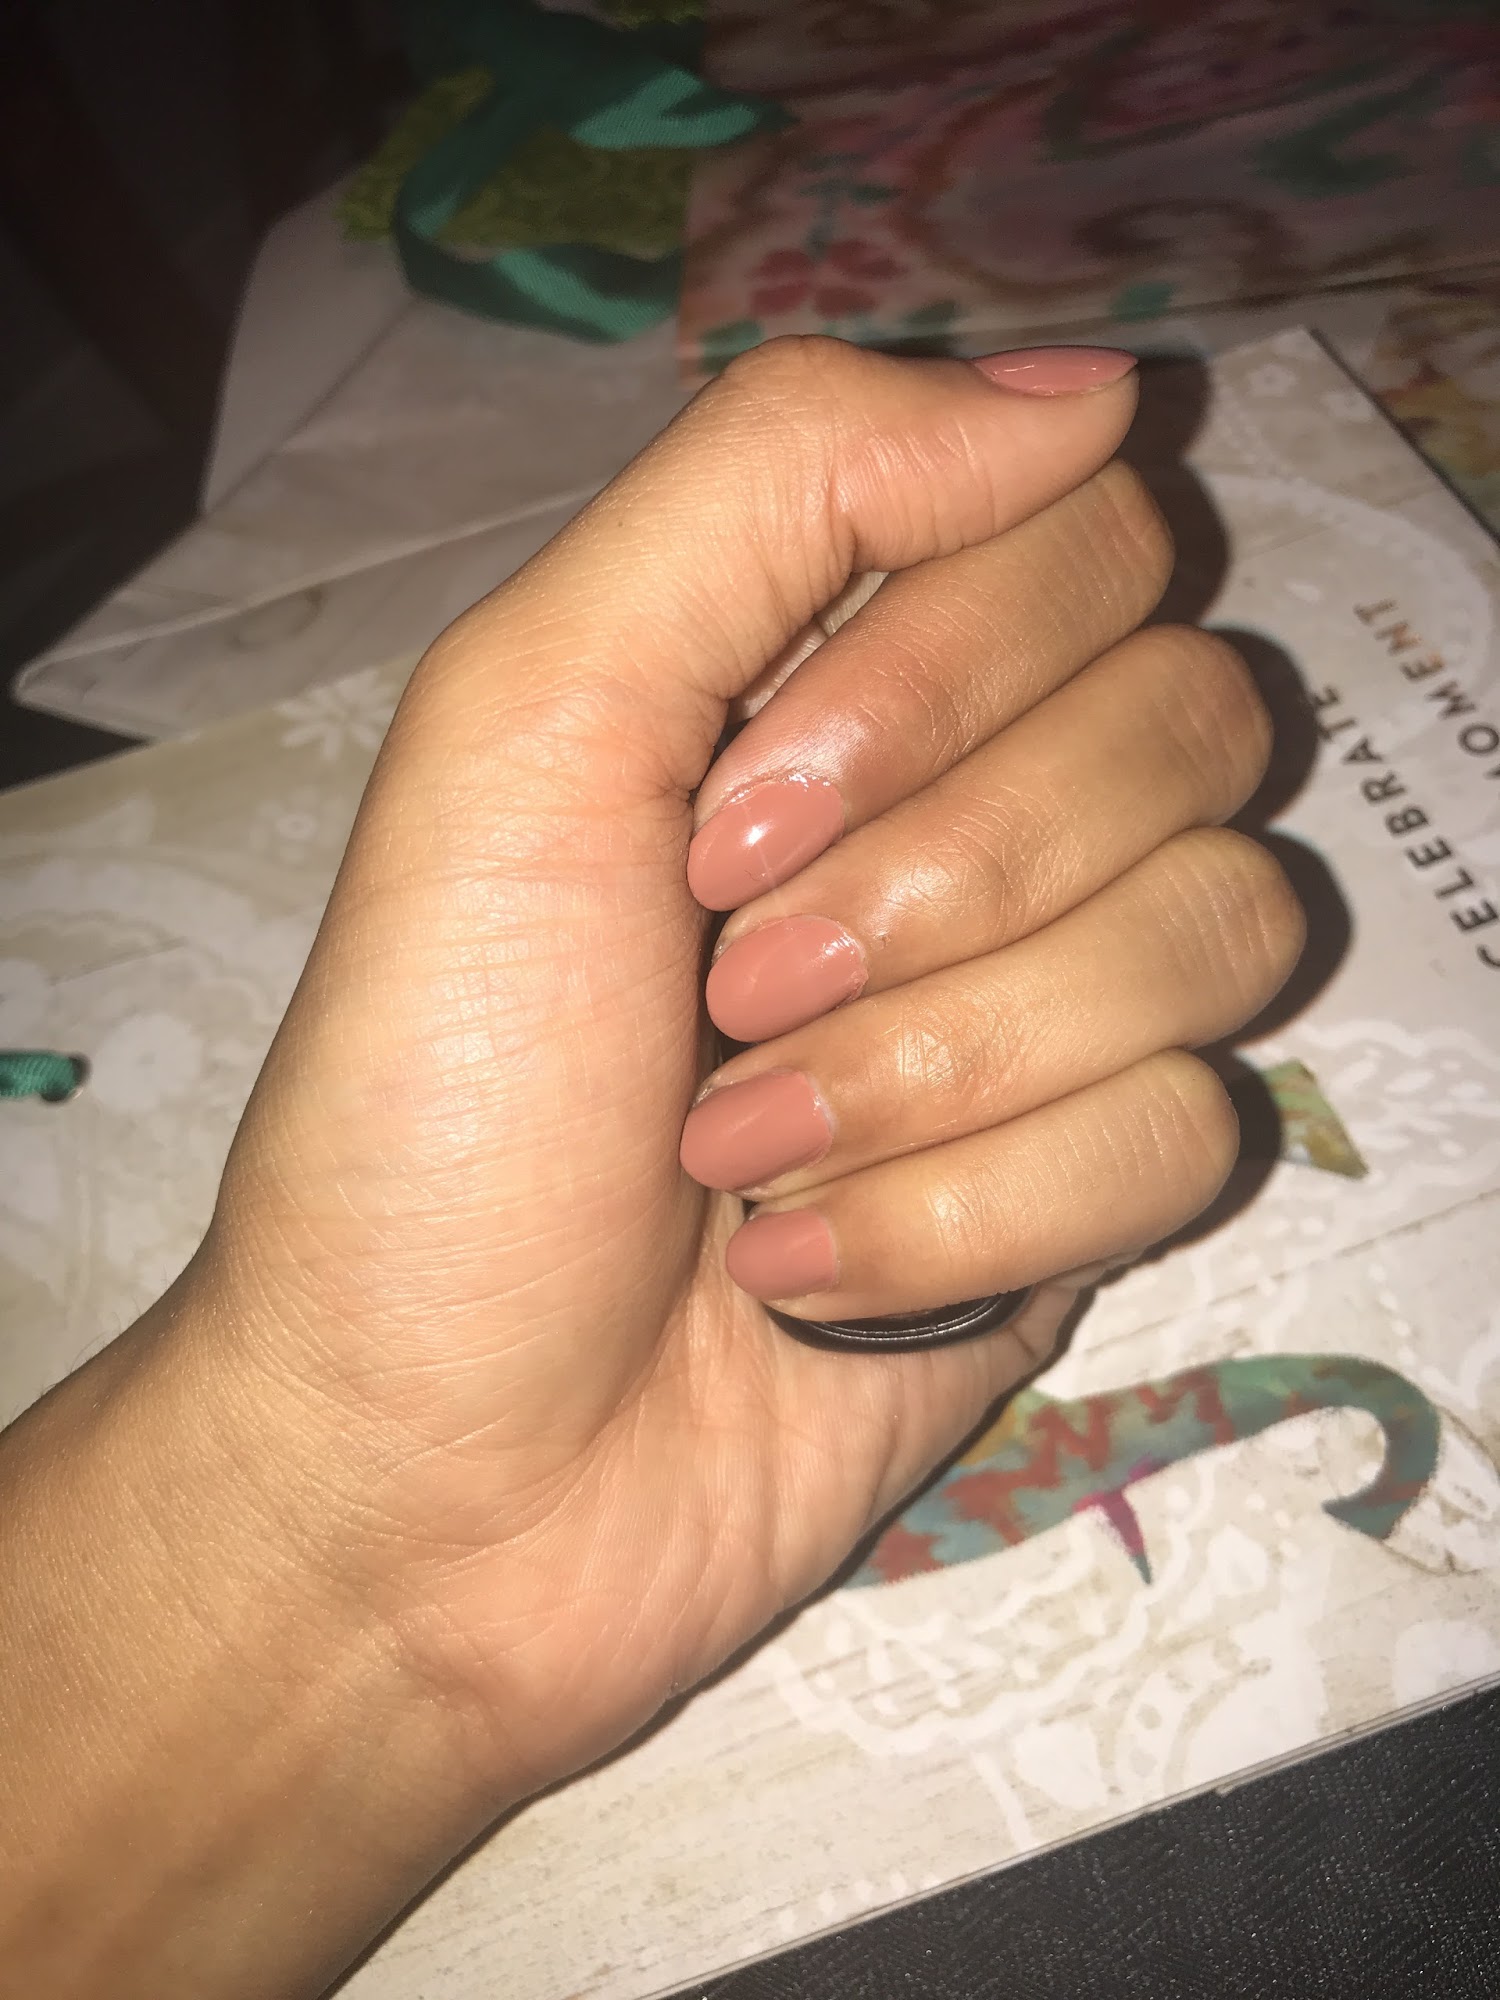 Nails by Vivian